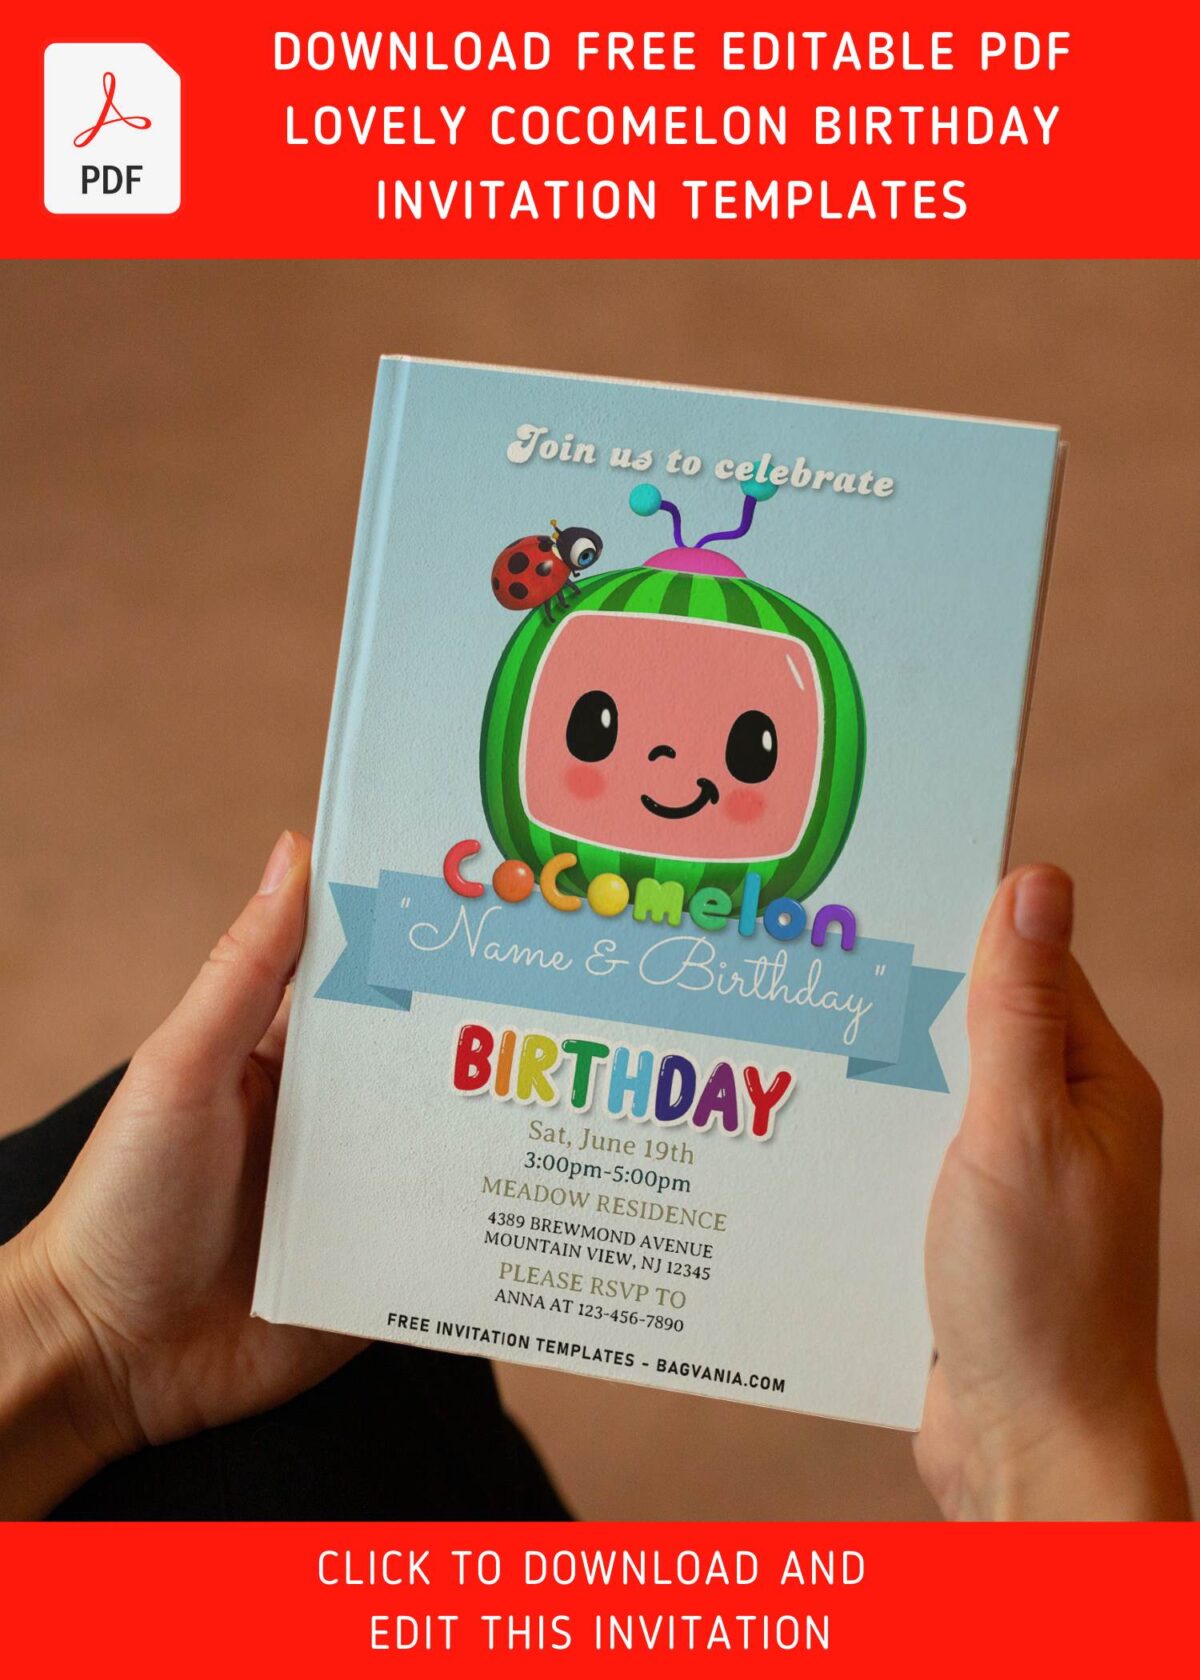 (Free Editable PDF) Bright & Cheerful Cocomelon Birthday Invitation Templates with adorable script